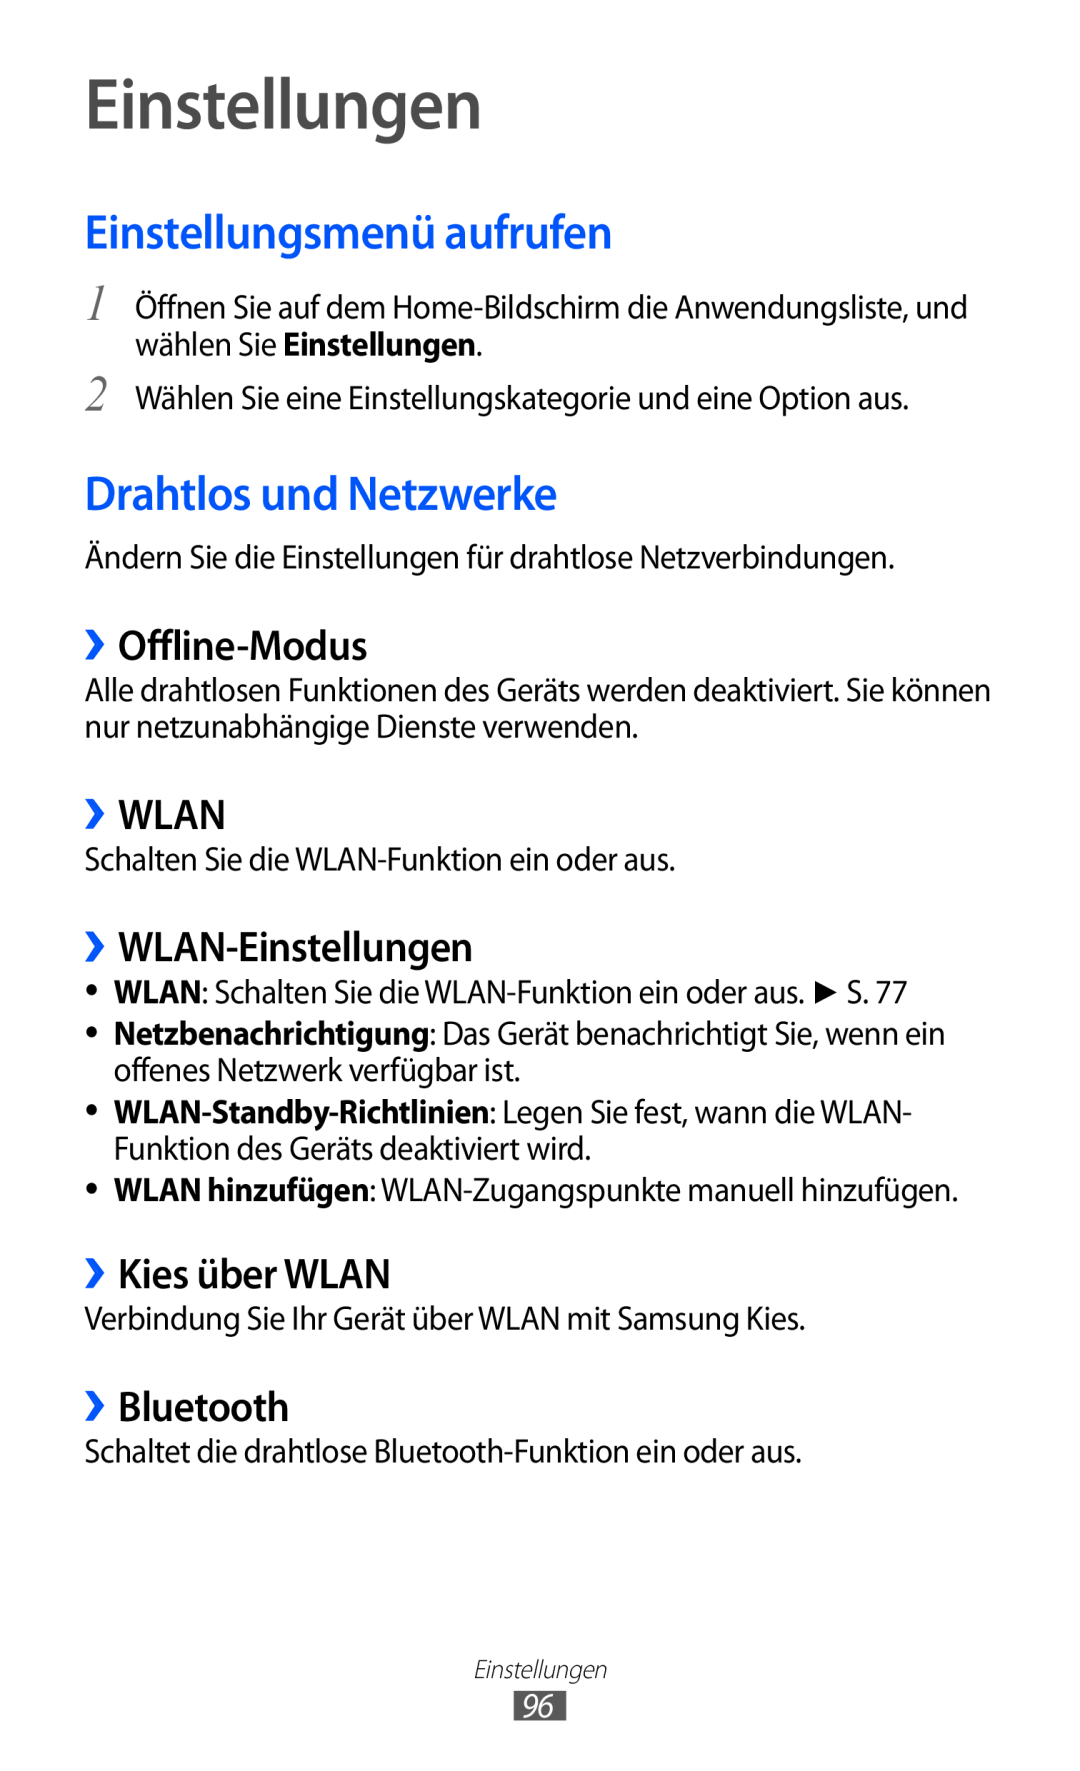 Samsung GT-P7501UWEDBT manual Einstellungen, Einstellungsmenü aufrufen, Drahtlos und Netzwerke, ››Offline-Modus, ››Wlan 